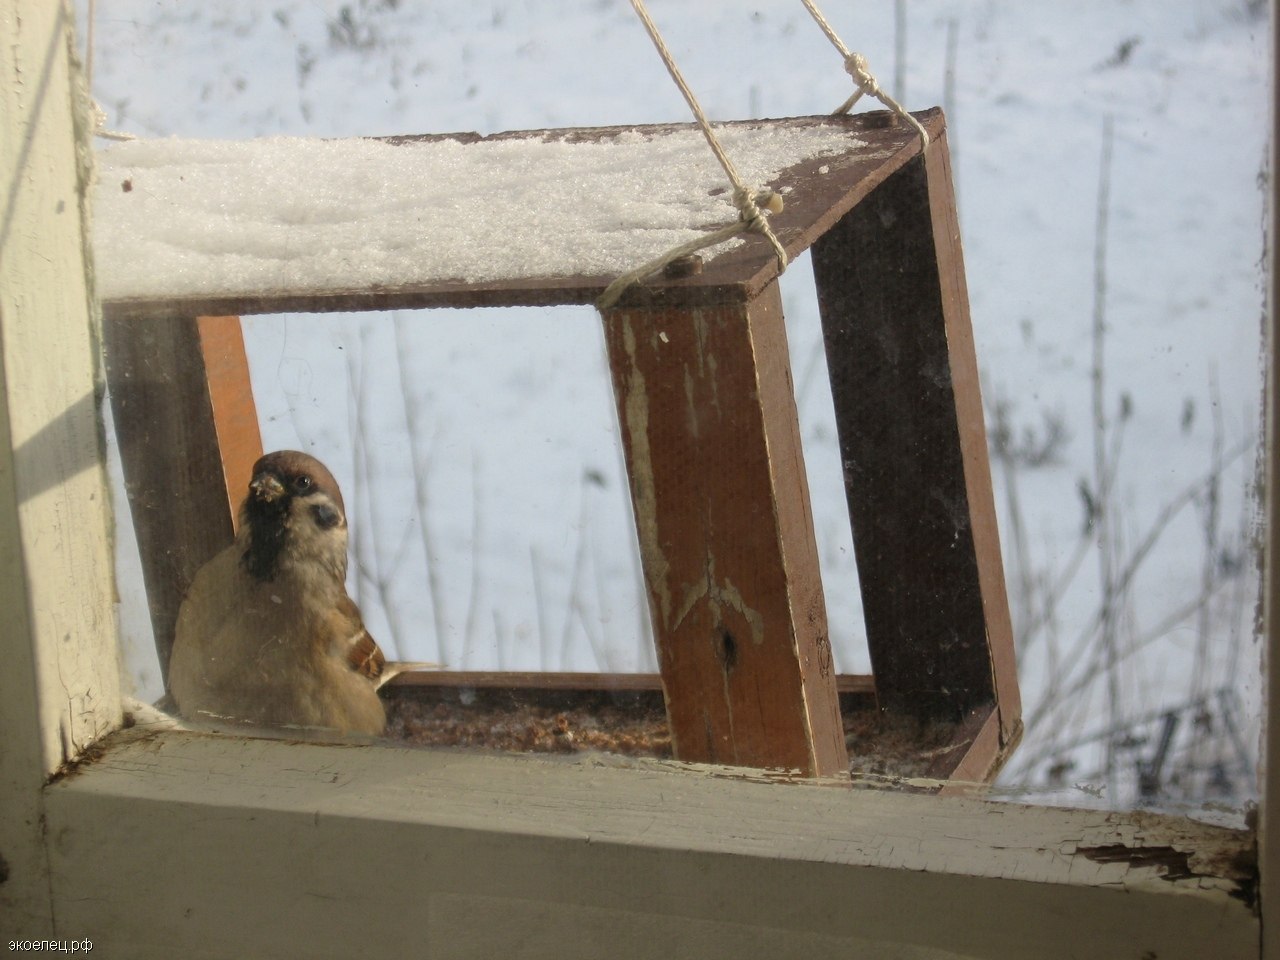 Кормушка для птиц под окном. Воробей в кормушке. Птицы за окном. Кормушки за окном зимой. Воробушки на кормушке.